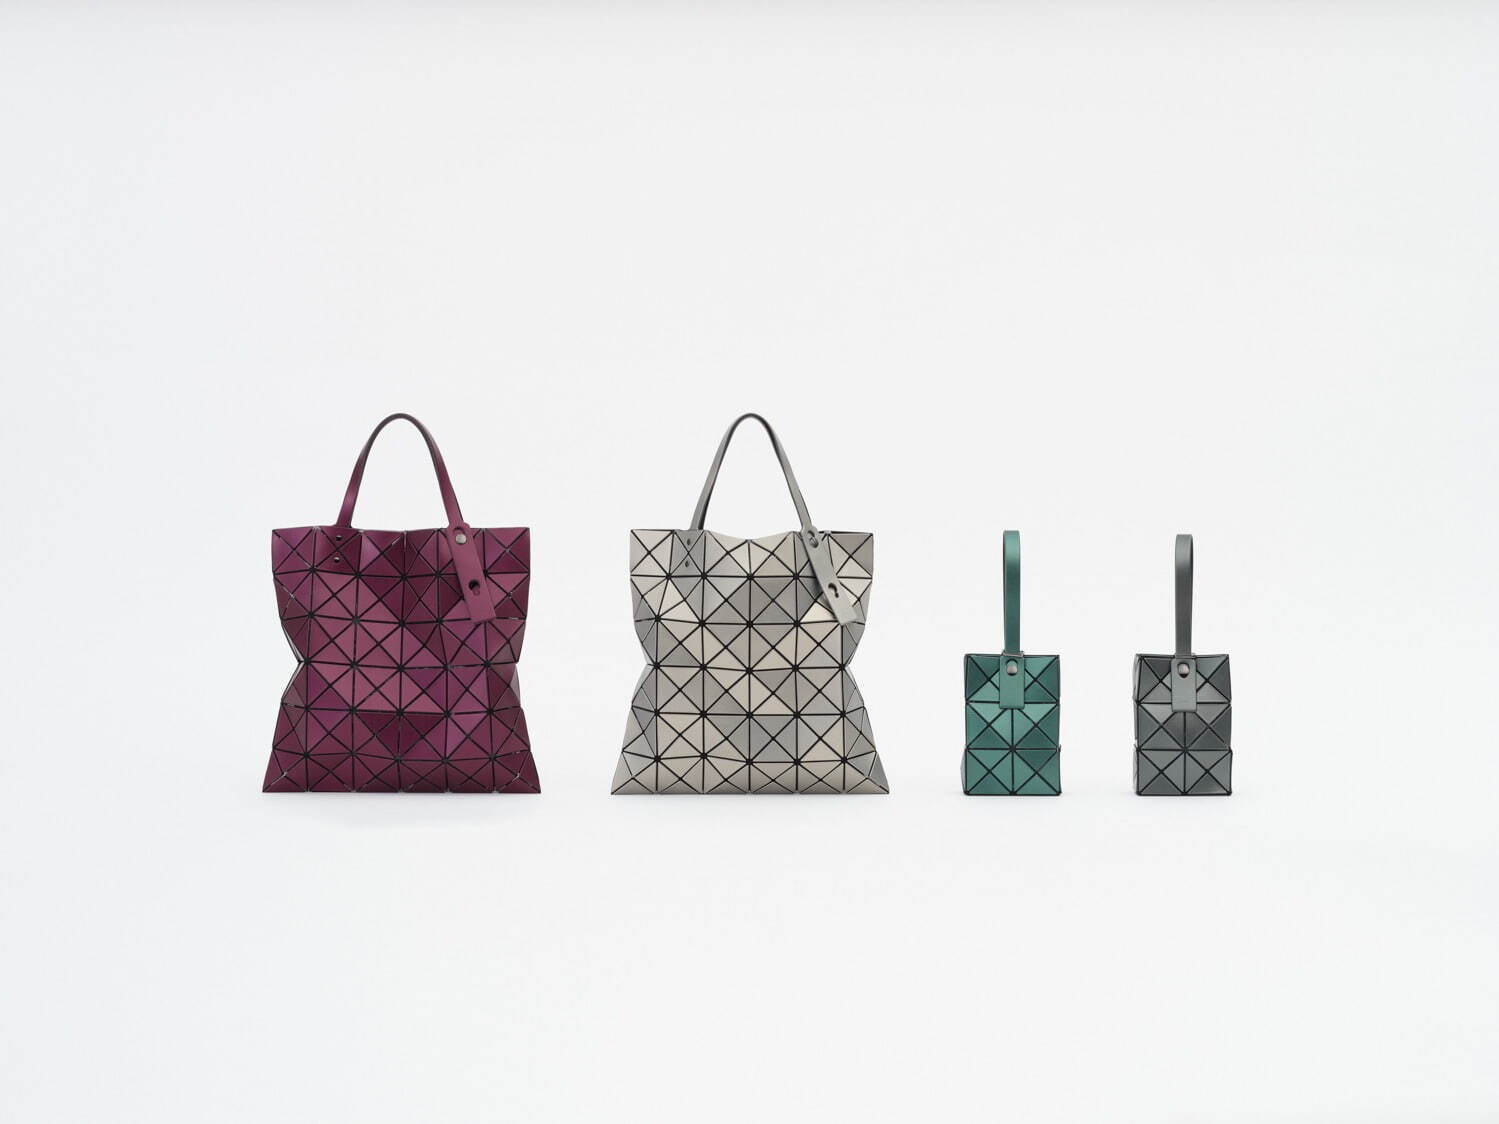 ＜LUCENT METALLIC＞
左から)「Tote bag」45,100円「Handbag」 27,500円